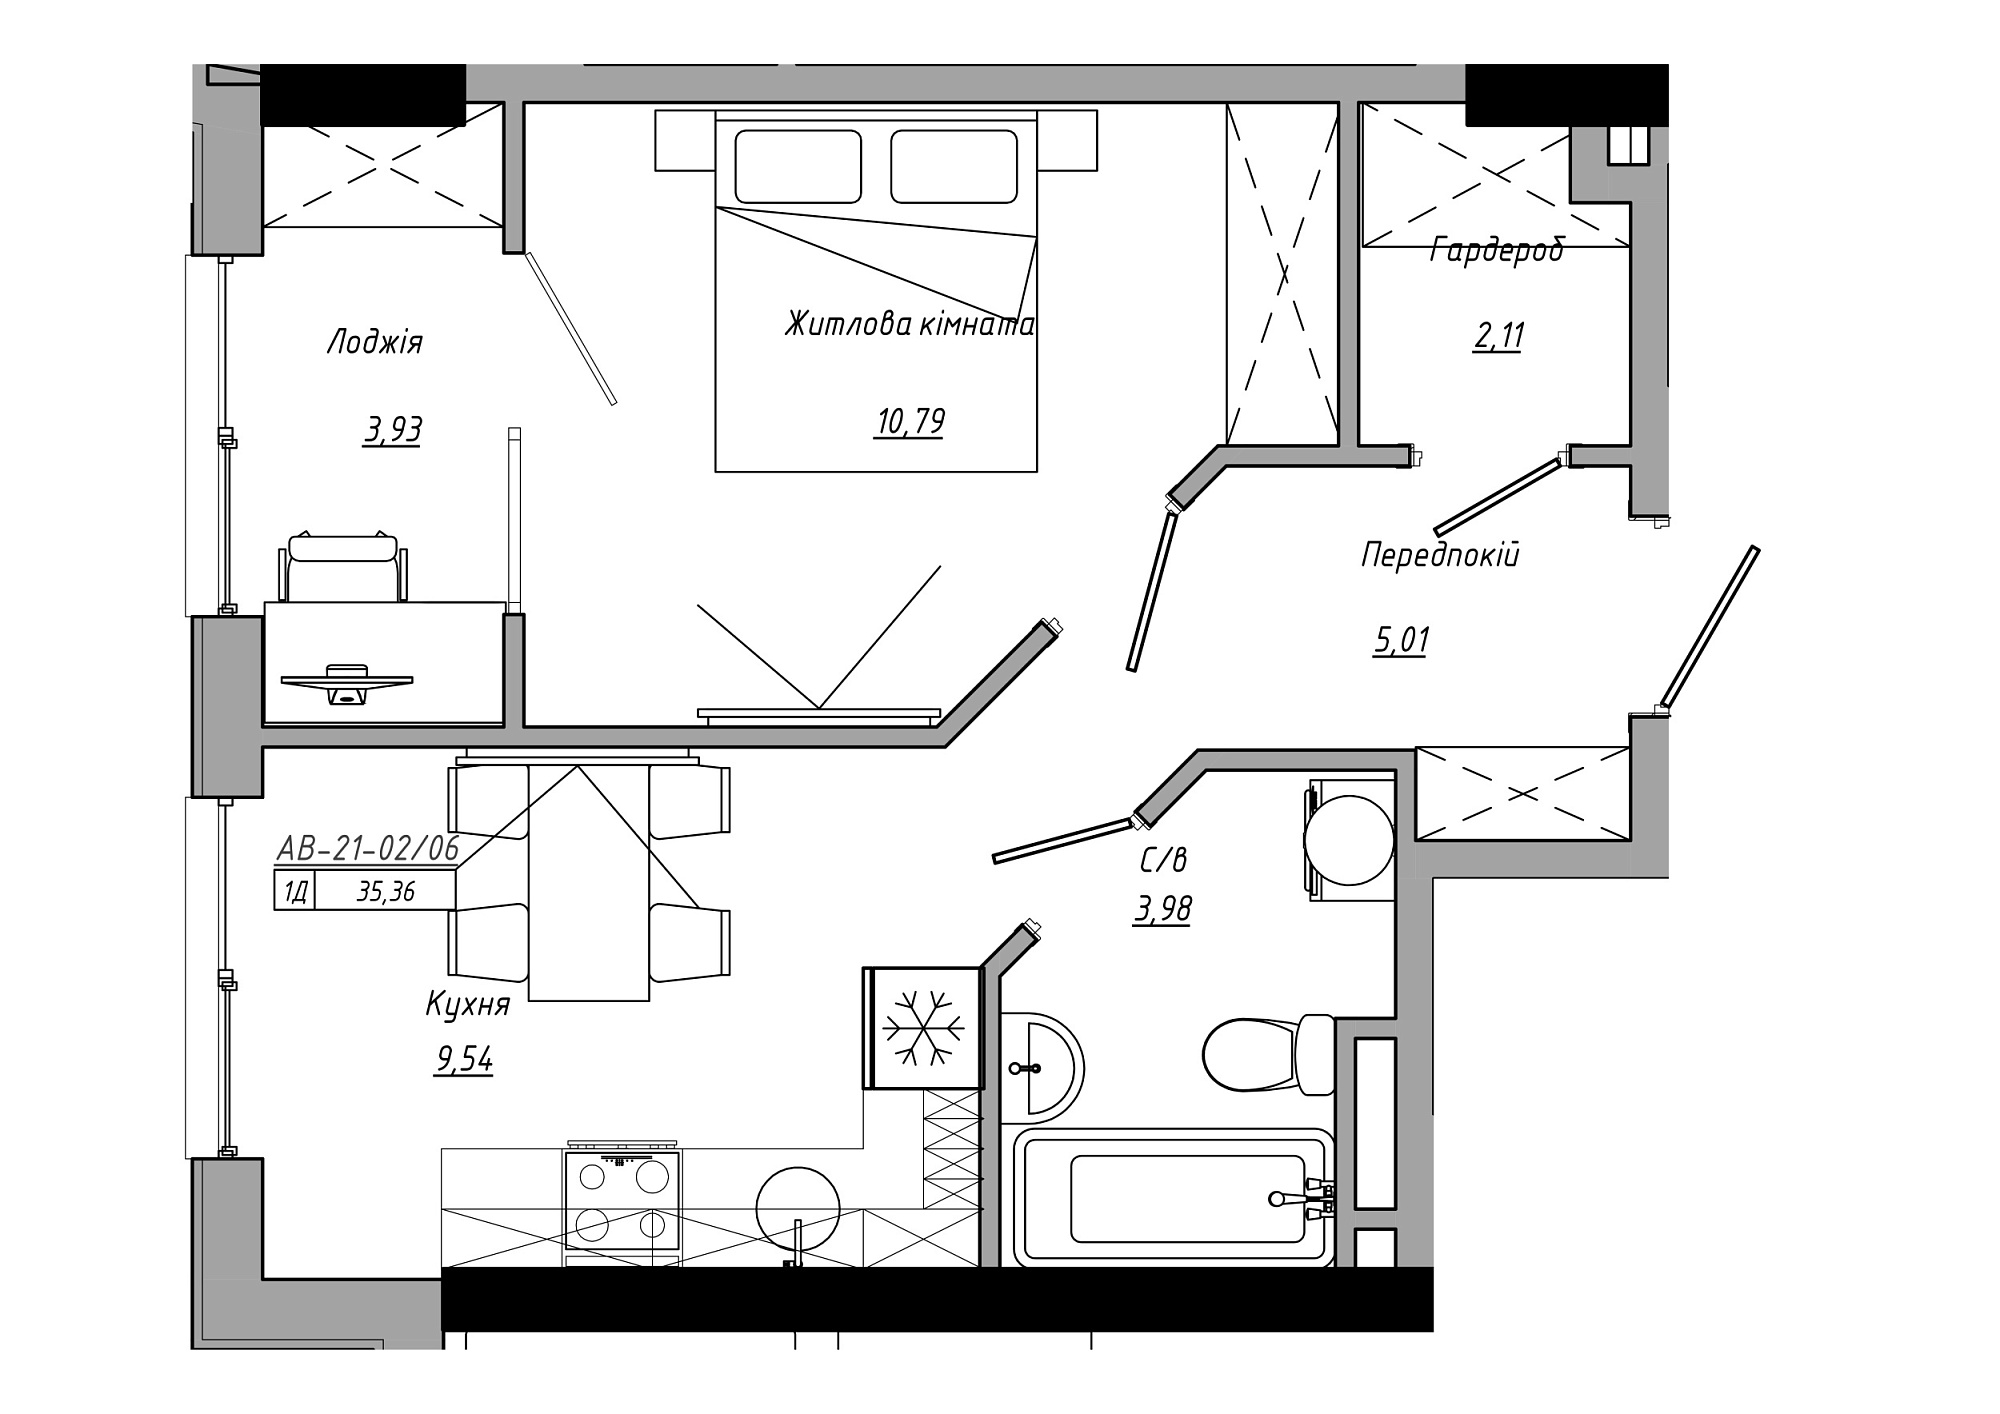 Планировка 1-к квартира площей 35.36м2, AB-21-02/00006.